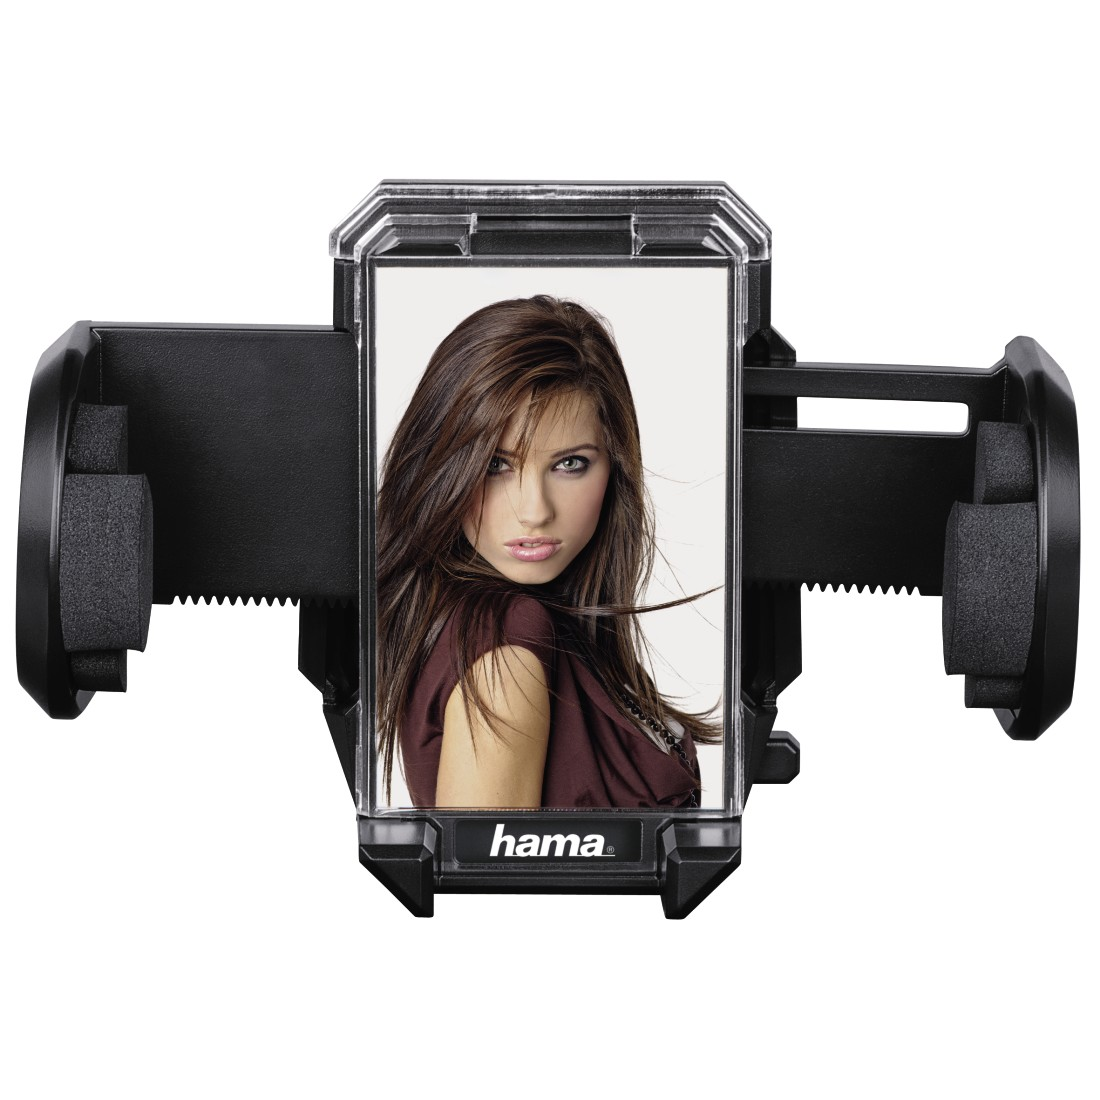 HAMA Universal-Smartphone Kfz-Halterung, Breite 4-11 cm, Schwarz